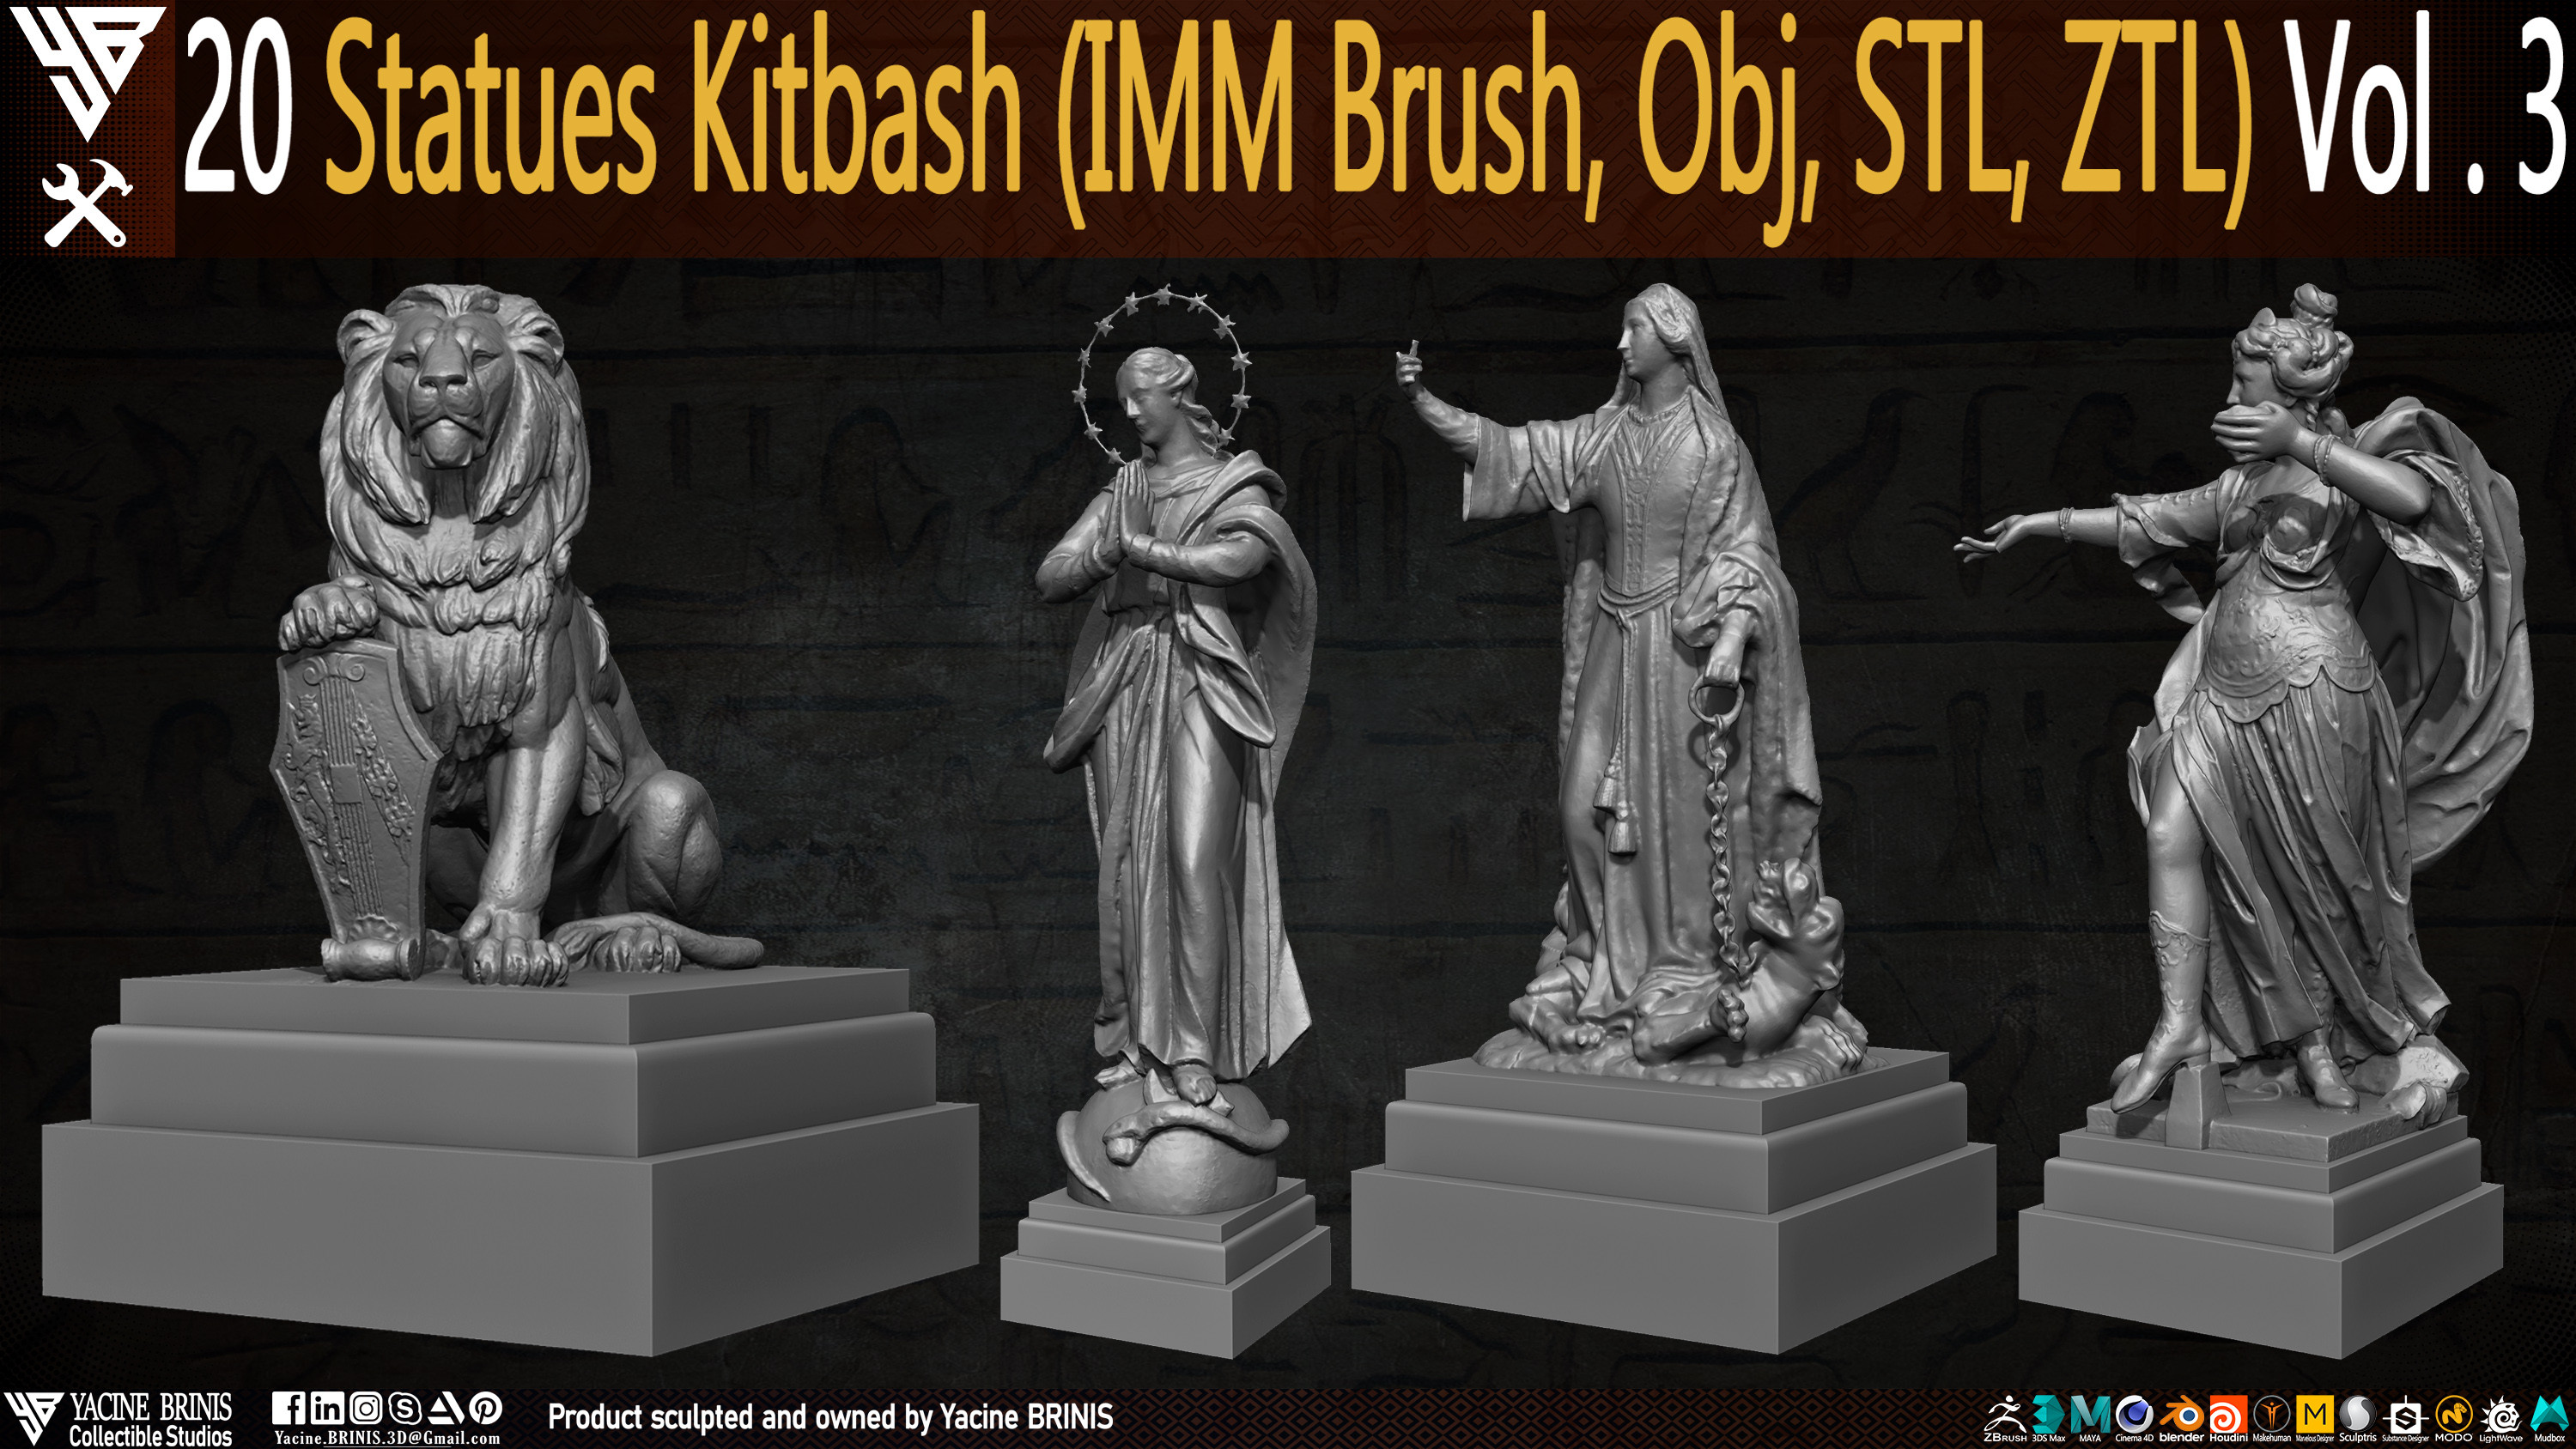 Statues Kitbash by yacine brinis Set 14